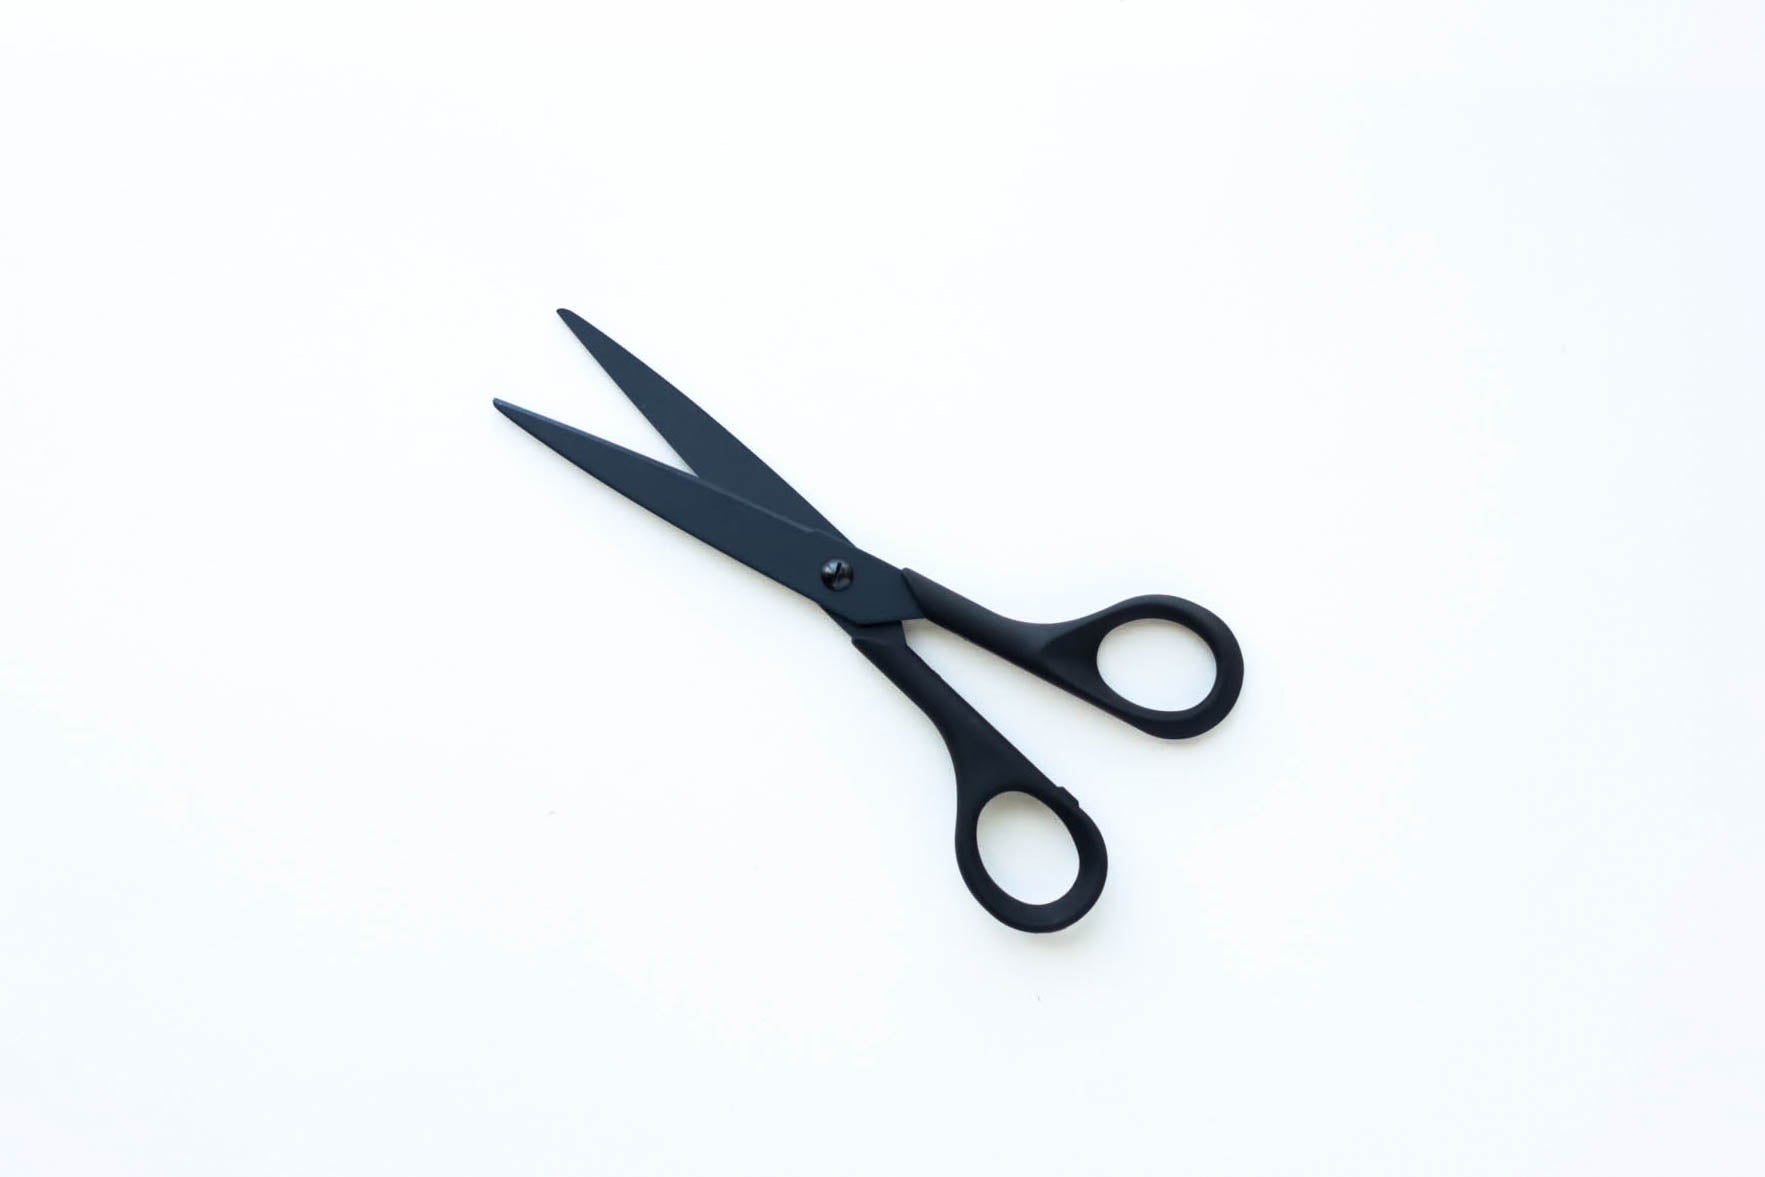 Allex Large Desk Scissors – Case for Making